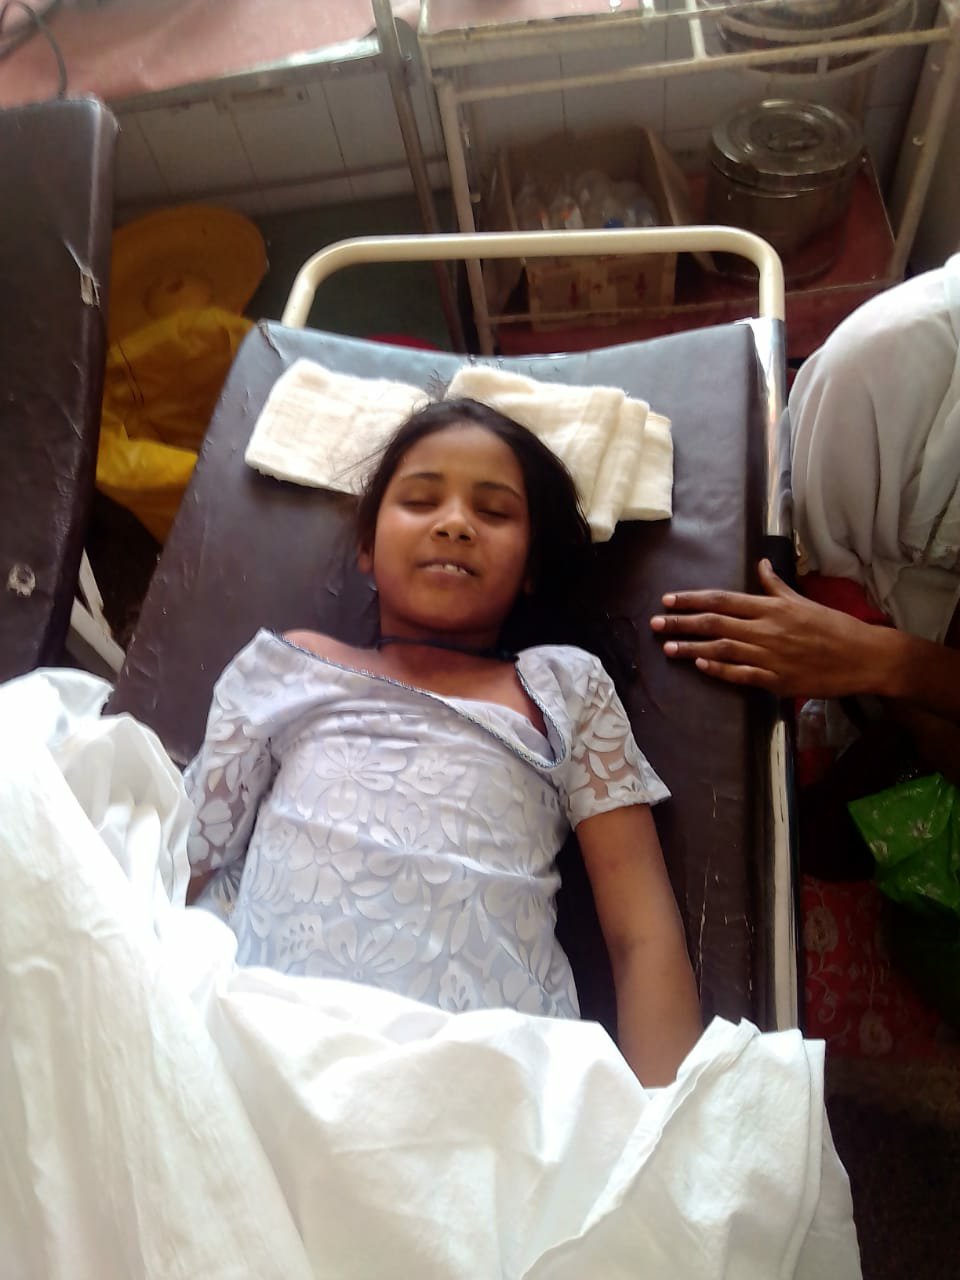 झांसी जिला चिकित्सालय के डाक्टरों की लापरवाही से 10 वर्षीय बच्ची की मौत, परिजनों ने लगाया गलत इंजेक्शन लगाने का आरोप | New India Times